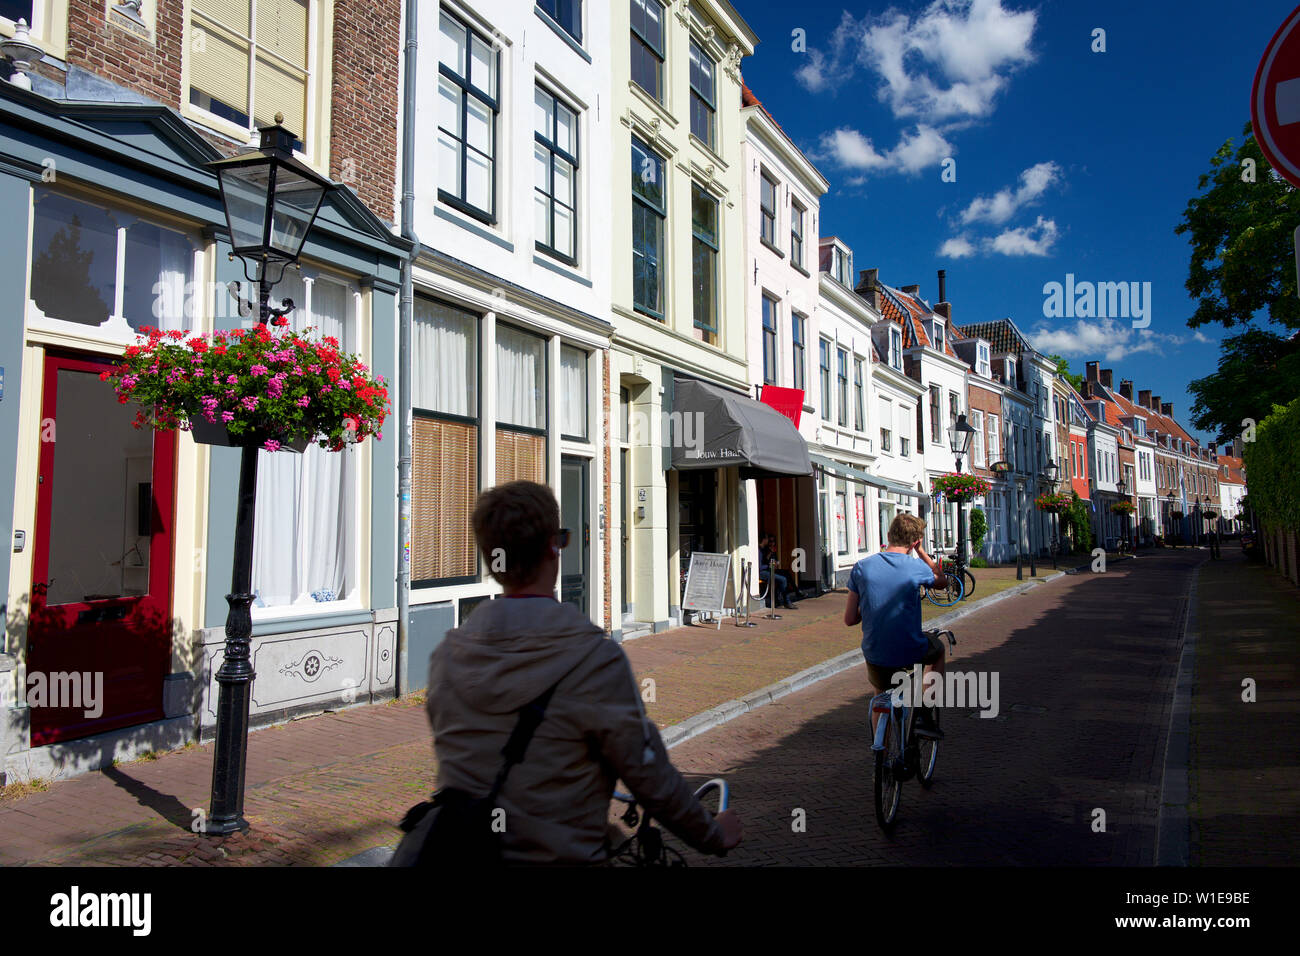 Rue traditionnel dans la vieille ville d'Utrecht, Pays-Bas Banque D'Images